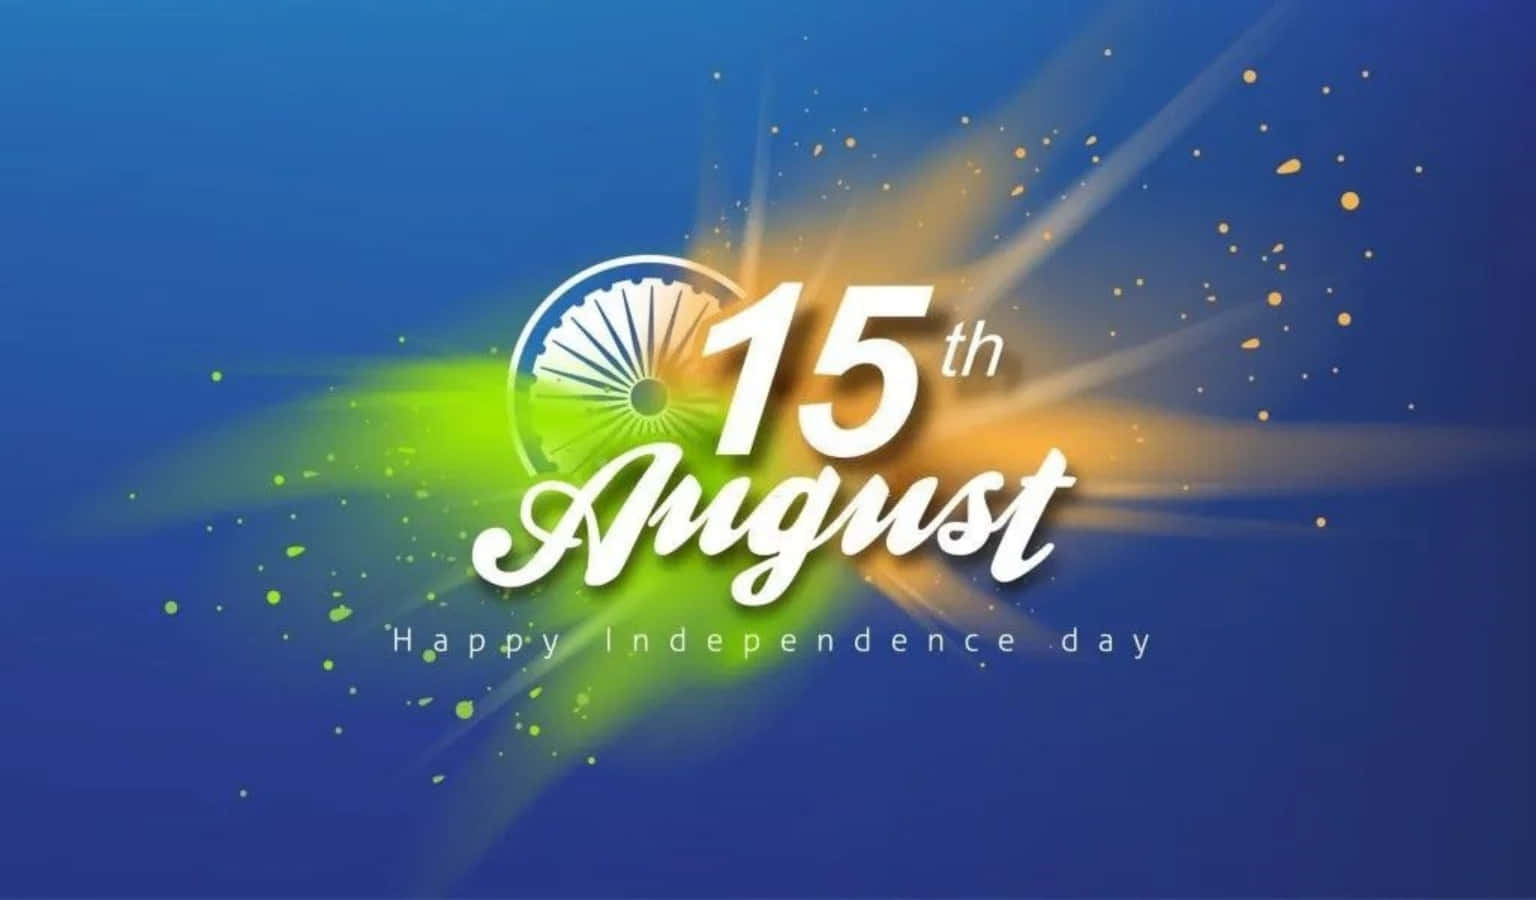 Immaginecon Sfondo Blu Per Il Giorno Dell'indipendenza Dell'india.